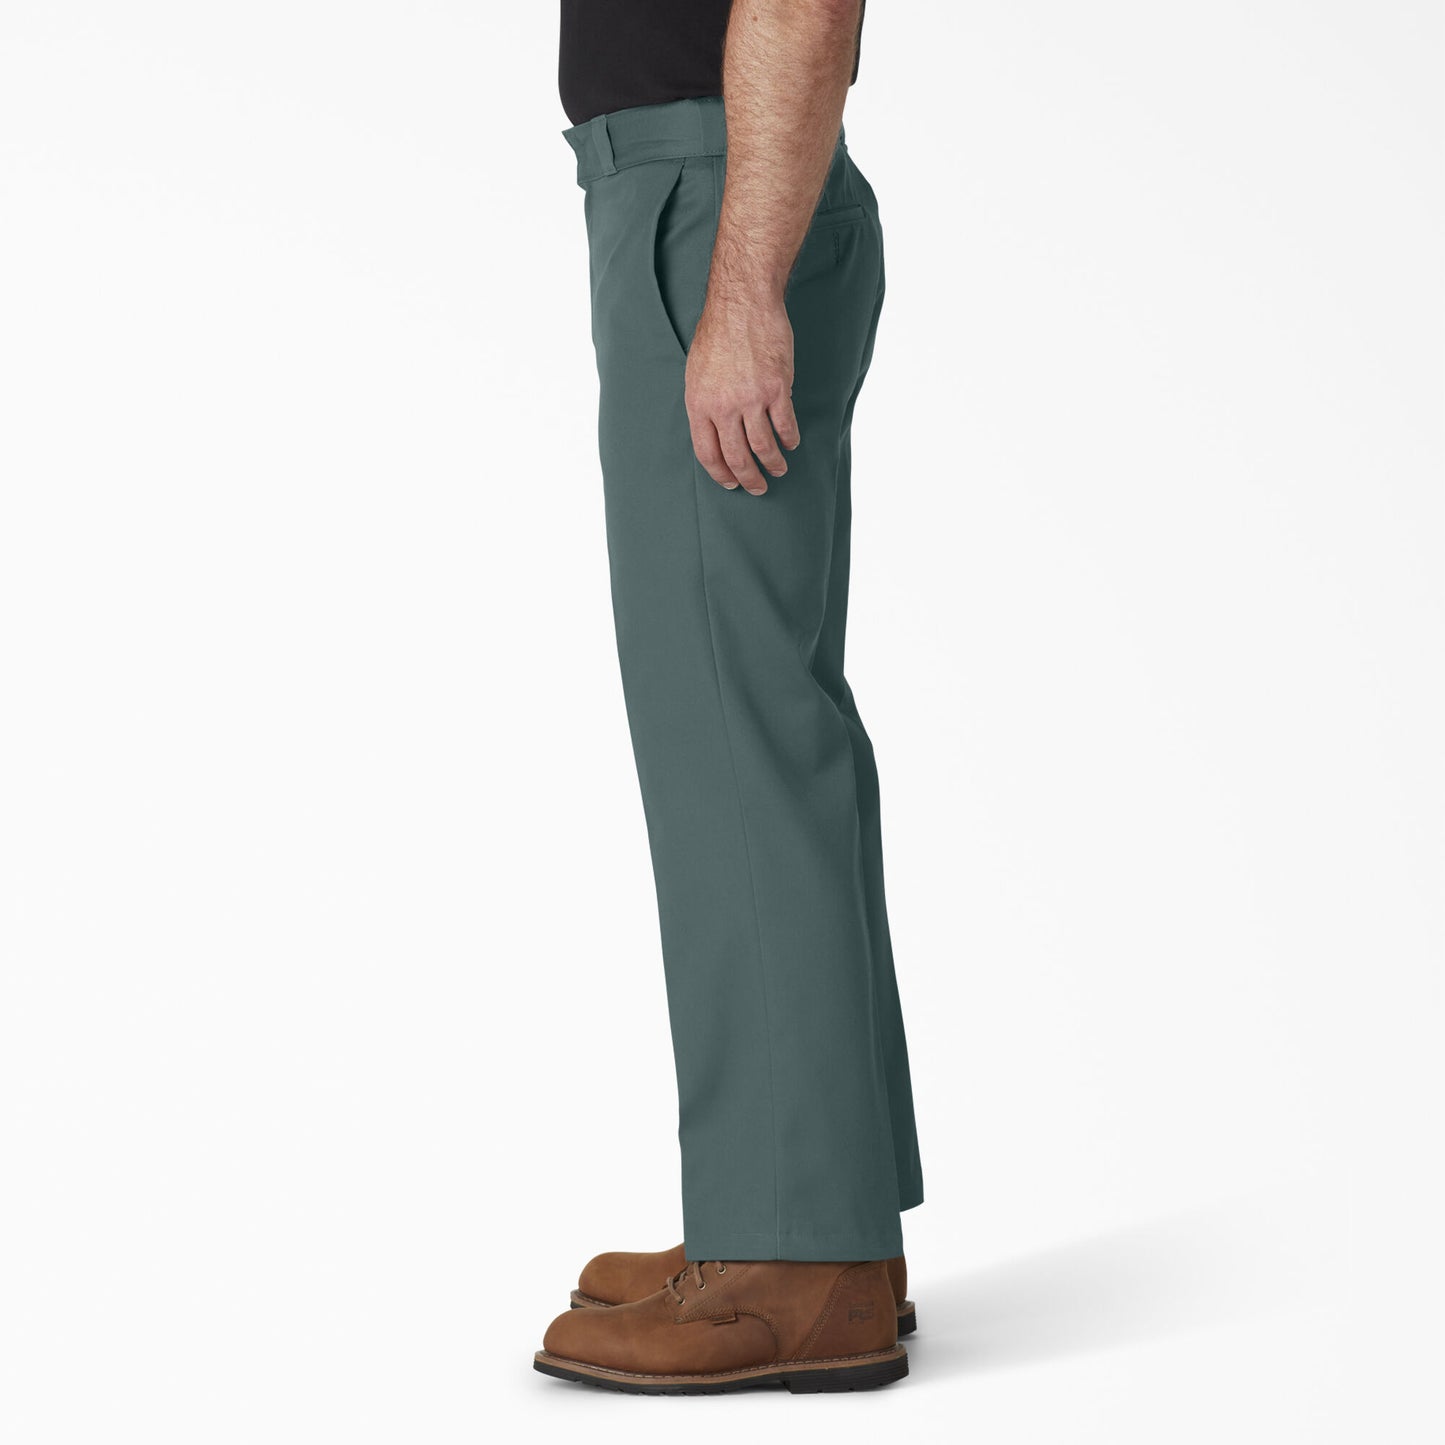 Dickies Original 874® Work Pants - Lincoln Green